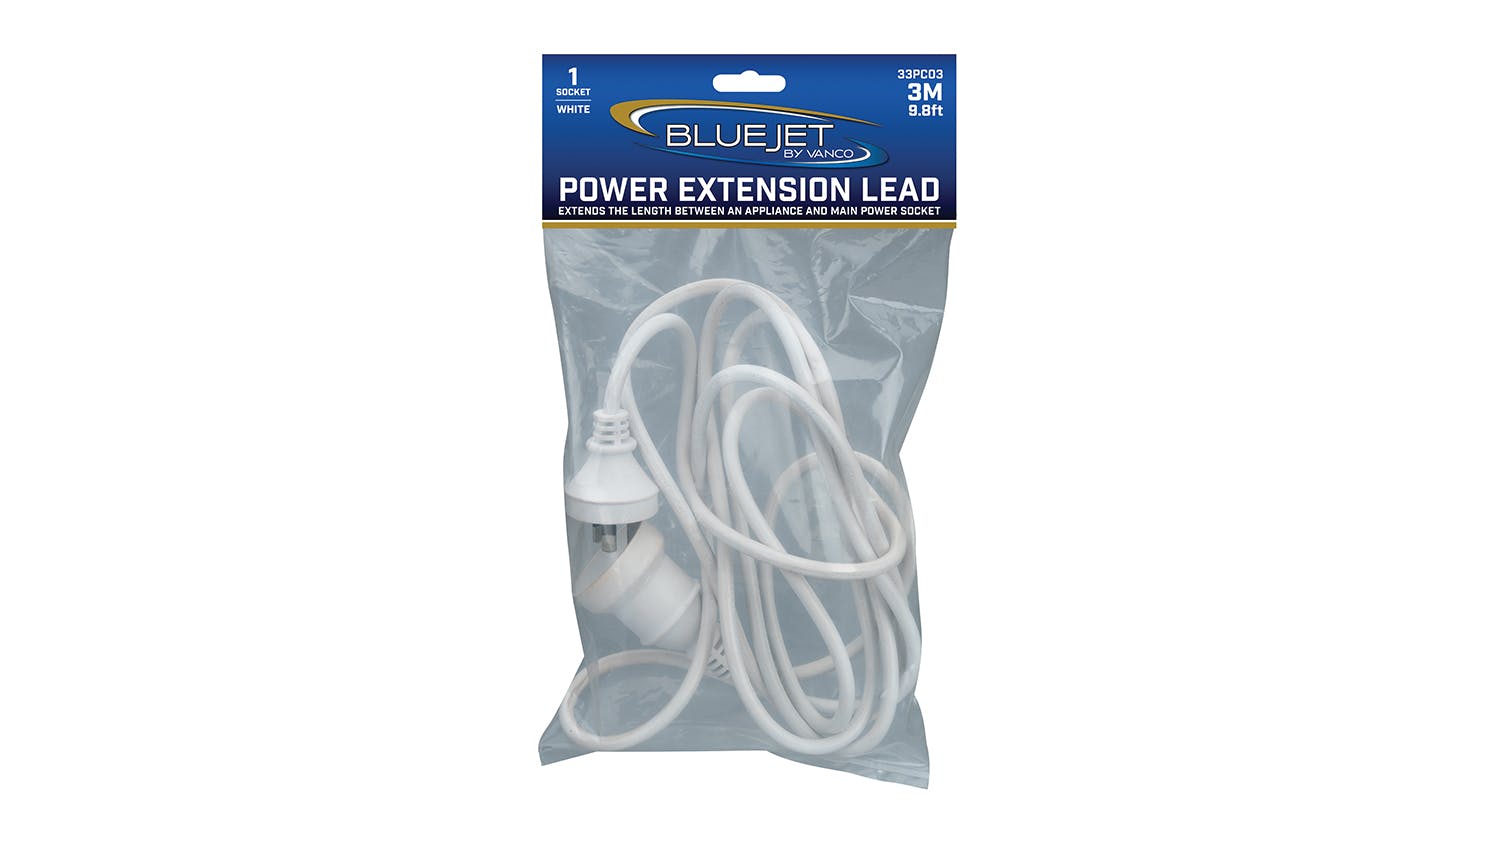 Vanco Bluejet Power Extension Lead - 3m White (33PC03)